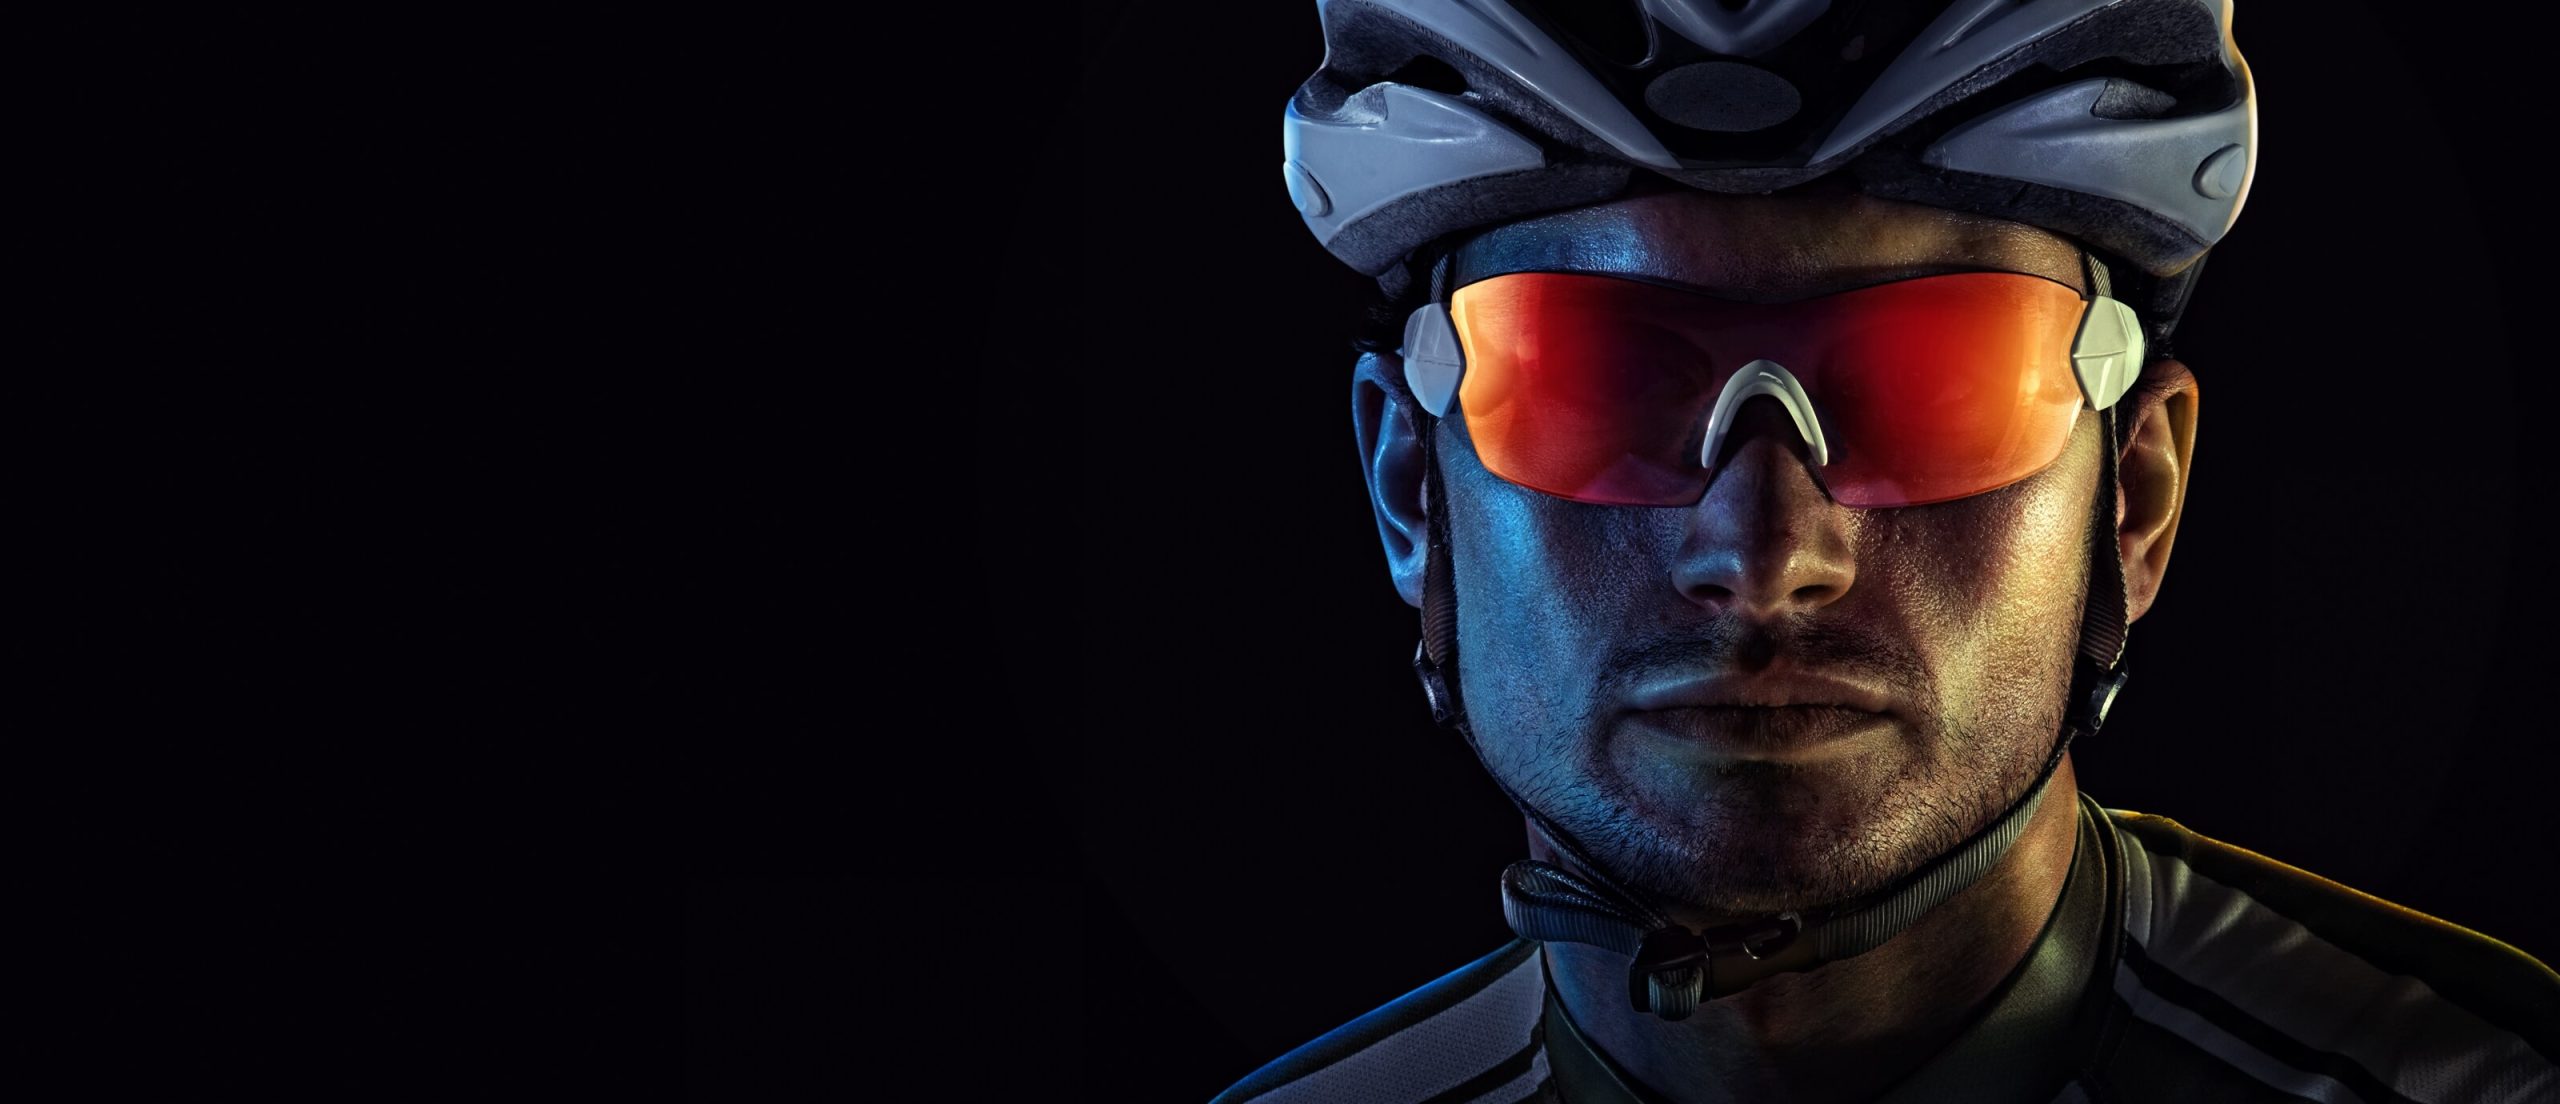 Fahrradfahrer mit Helm und Sportbrille guckt konzentriert